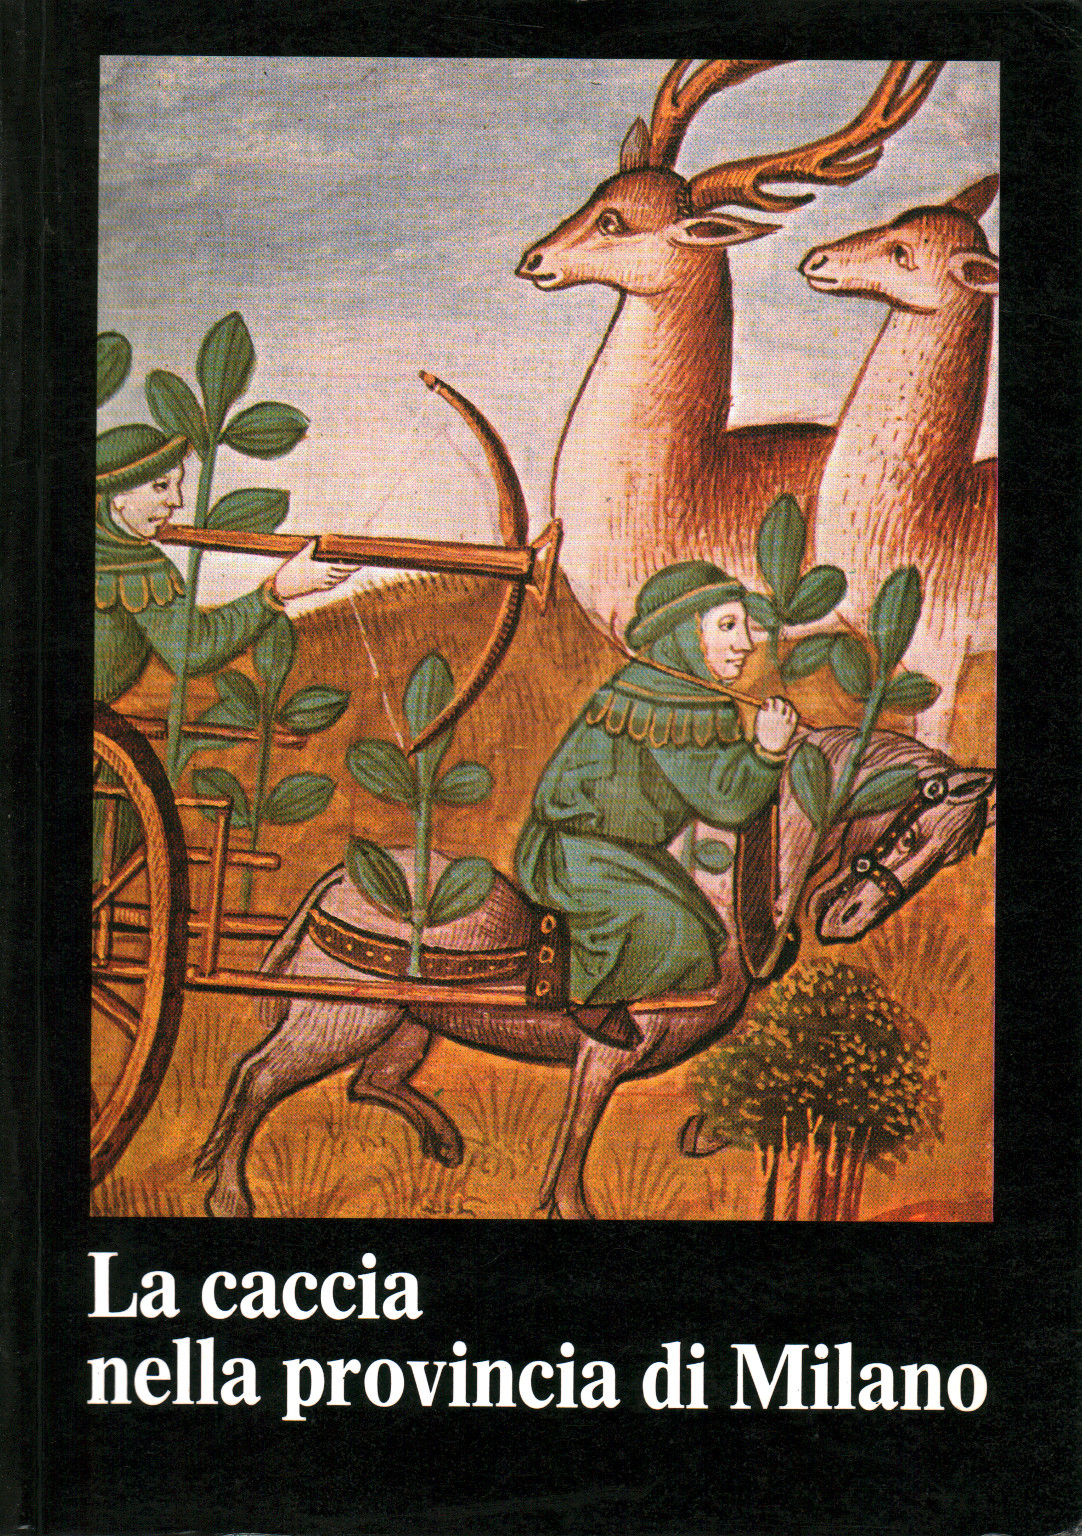 Jagd in der Provinz Mailand, s.a.